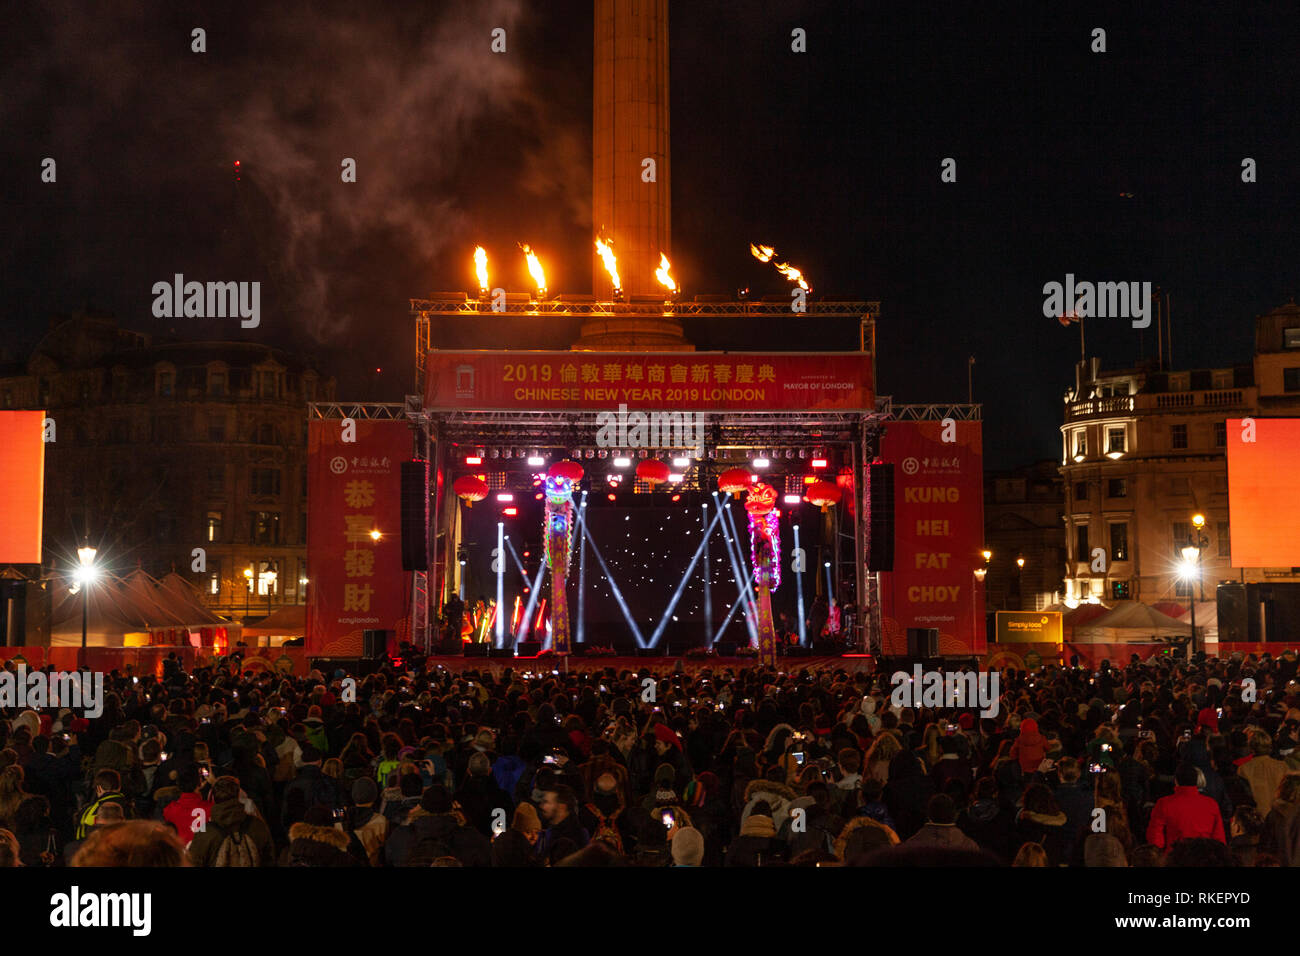 Londres, Reino Unido, 10 de febrero, 2019. Celebración del Año Nuevo Chino en Trafalgar Squaren de Londres, Reino Unido. Alamy/Harishkumar Shah Foto de stock